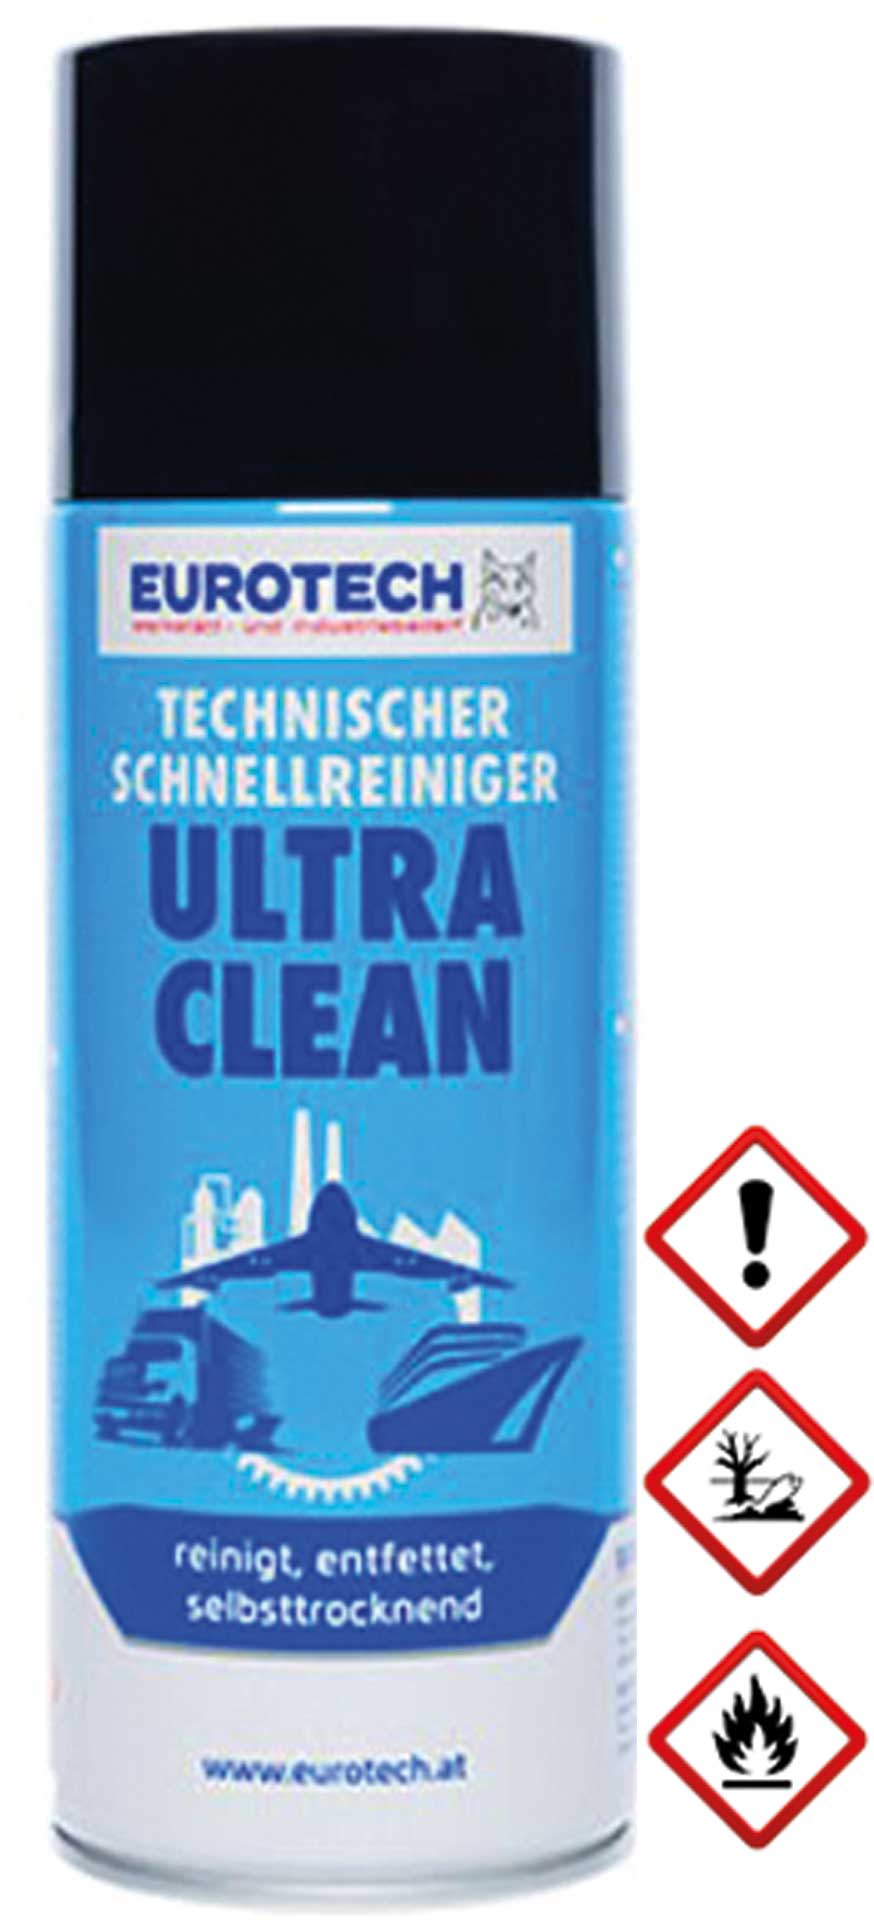 EUROTECH ULTRA-CLEAN REINIGER SPRAY 400ML